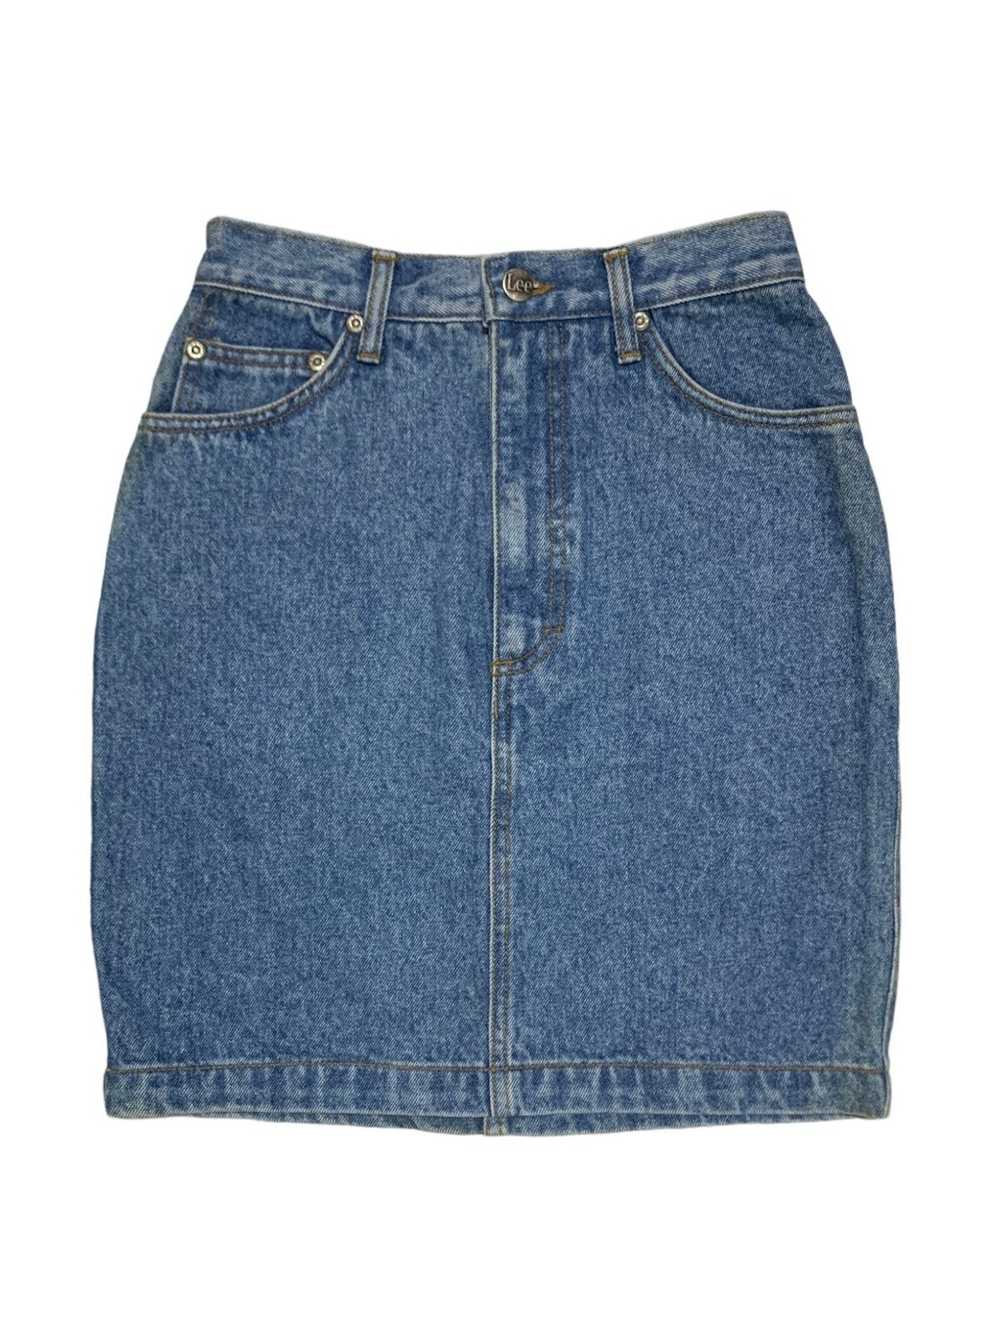 Lee × Streetwear × Vintage Vtg Lee Short Skirts - image 2